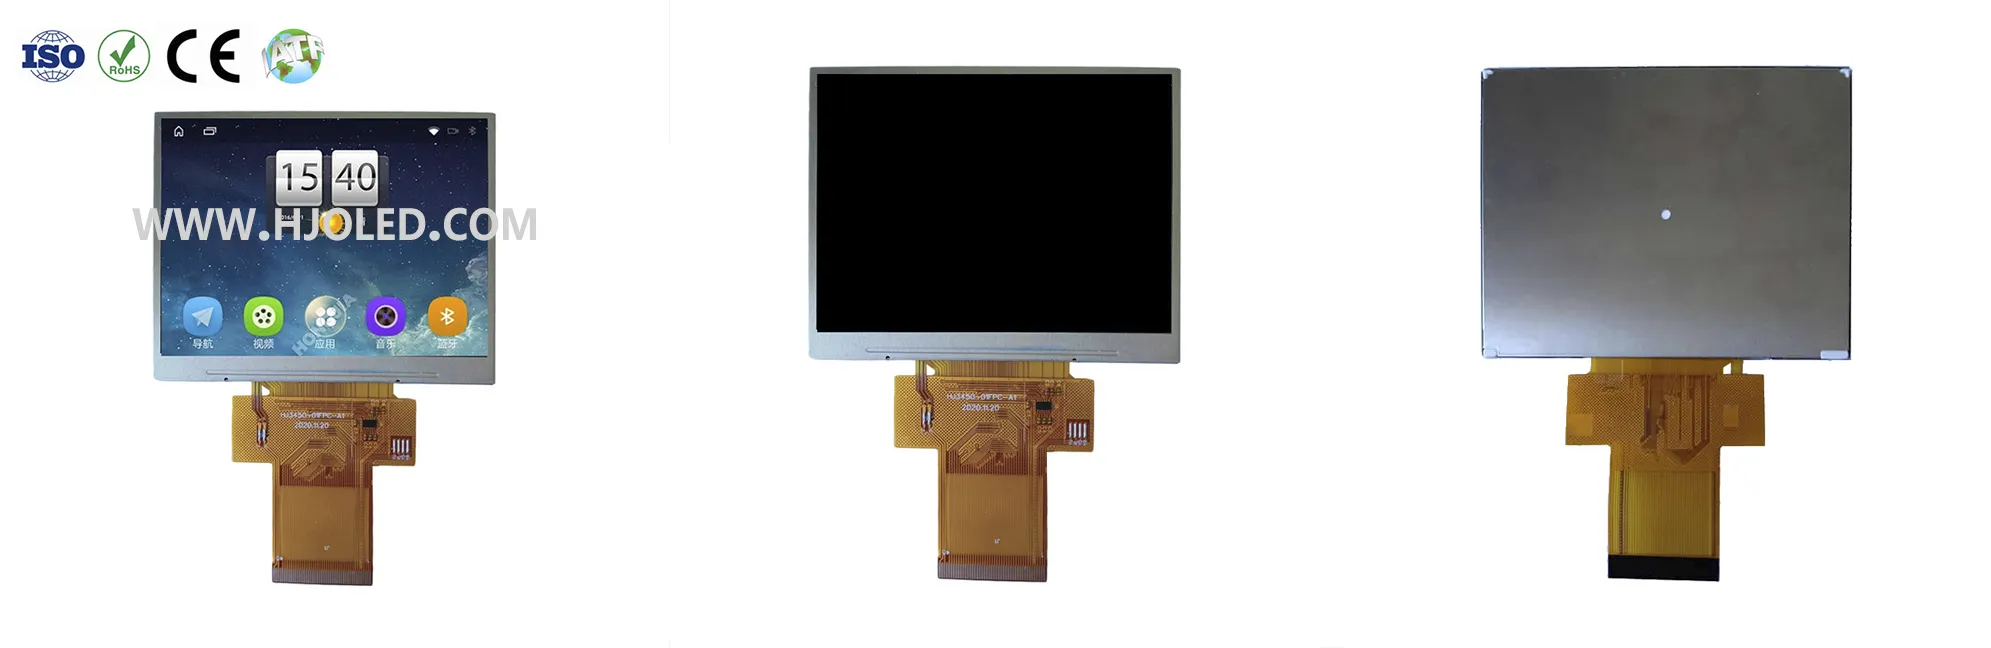 3.5 インチ TFT LCD スクリーン市場の主流の解像度は何ですか?